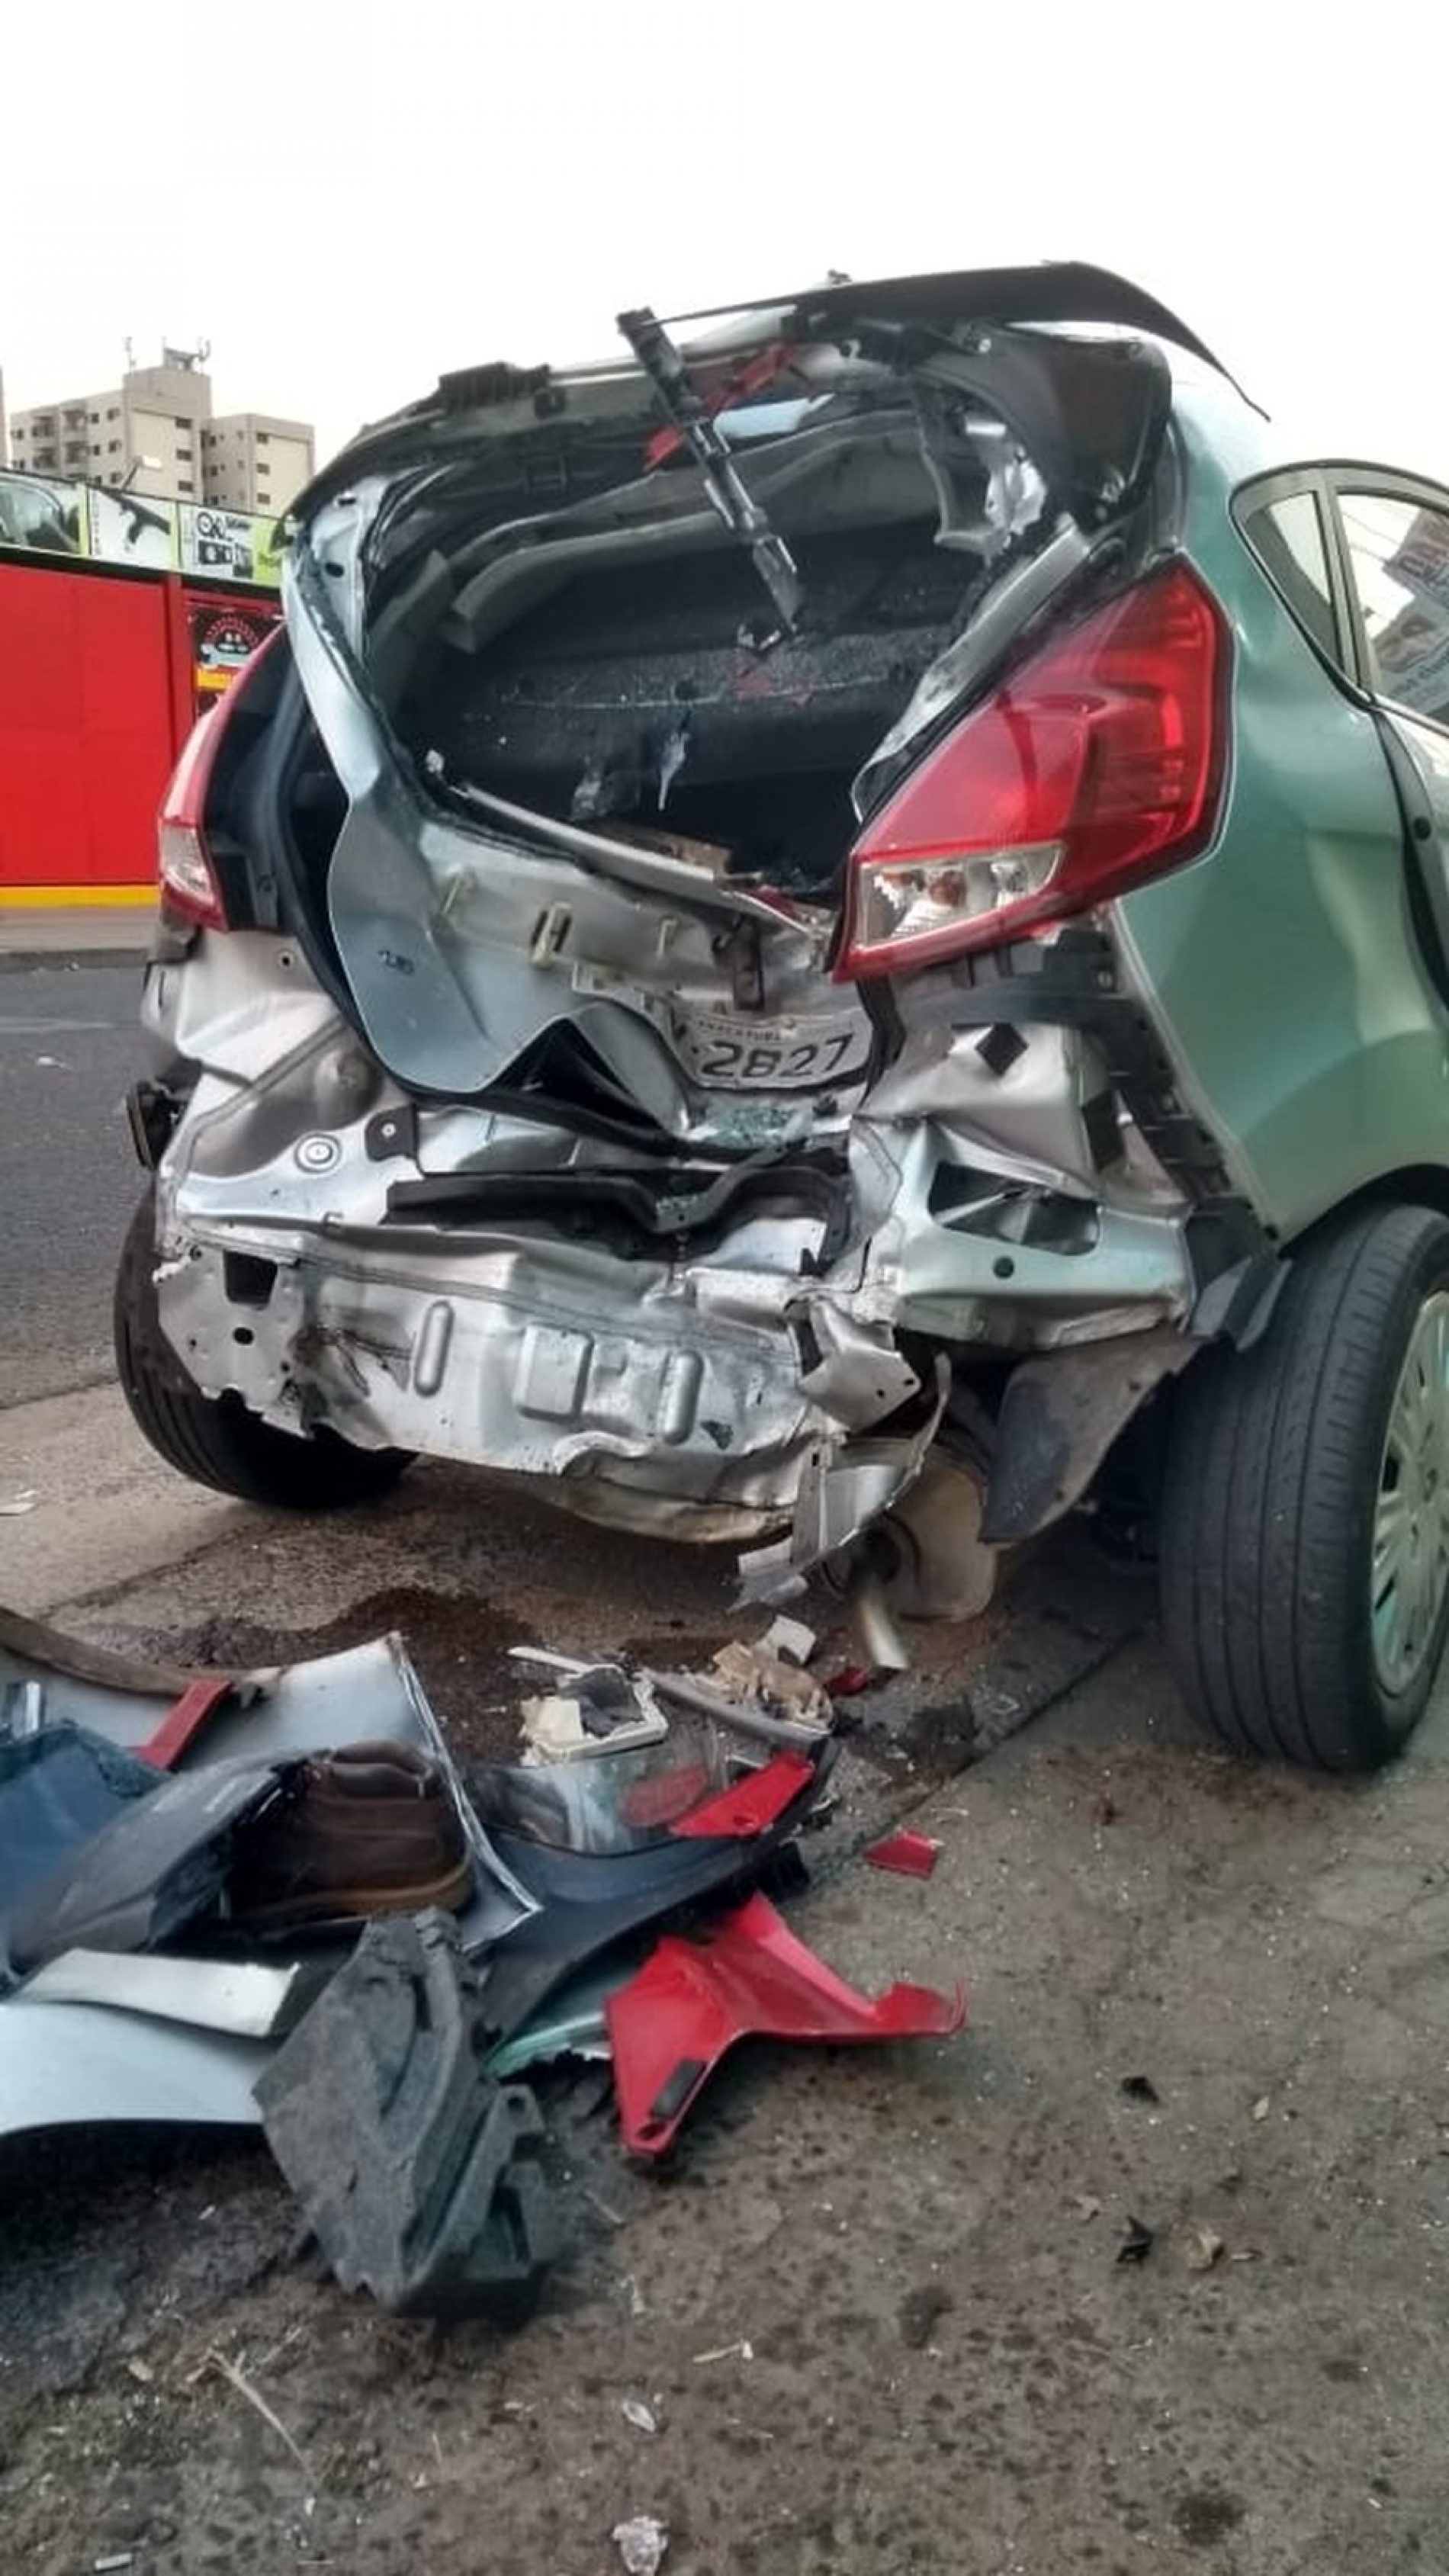 REGIÃO: Rapaz morre ao sofrer acidente de moto